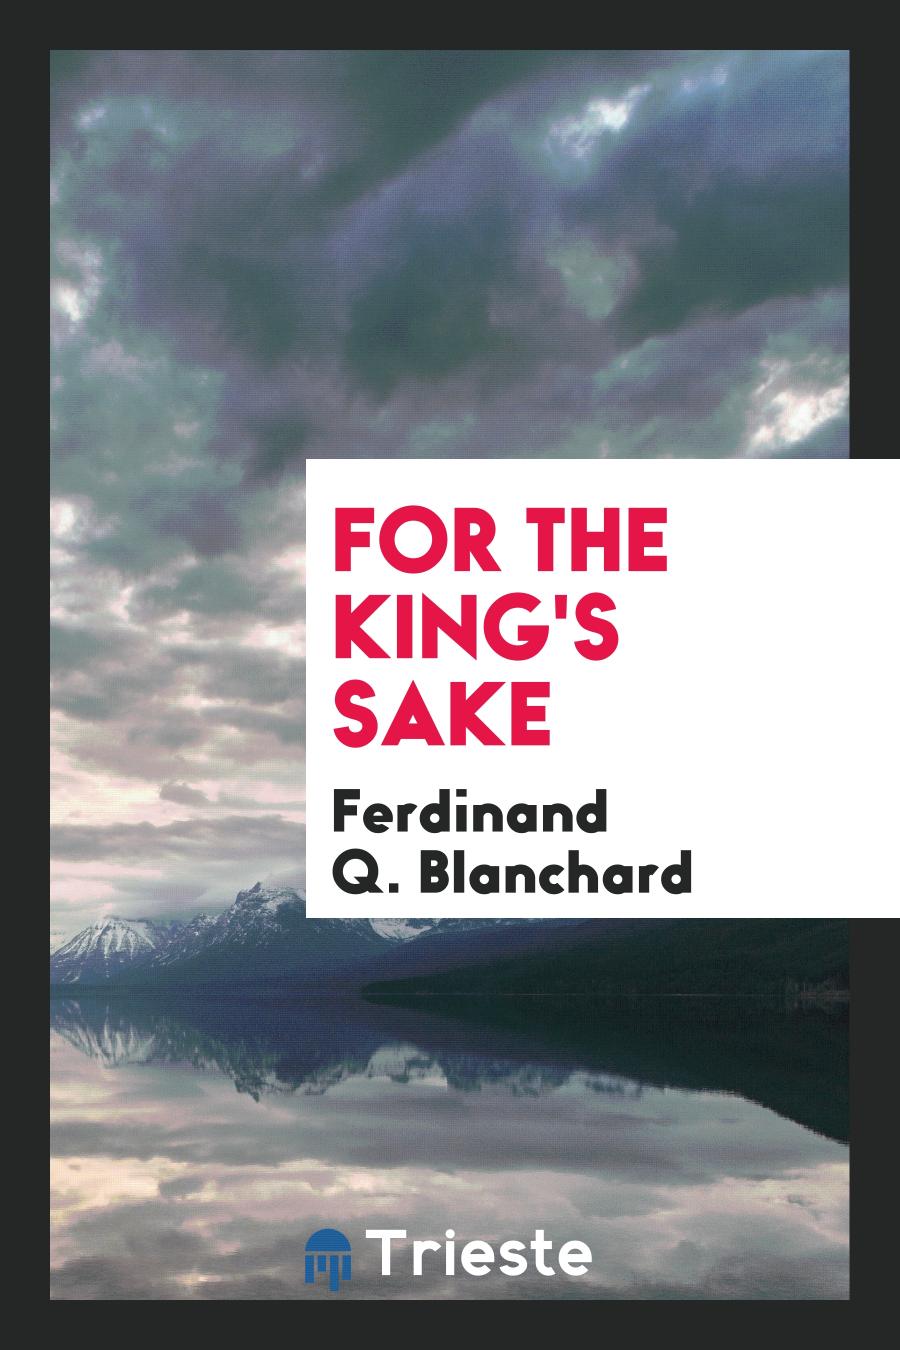 Ferdinand Q. Blanchard - For the King's Sake